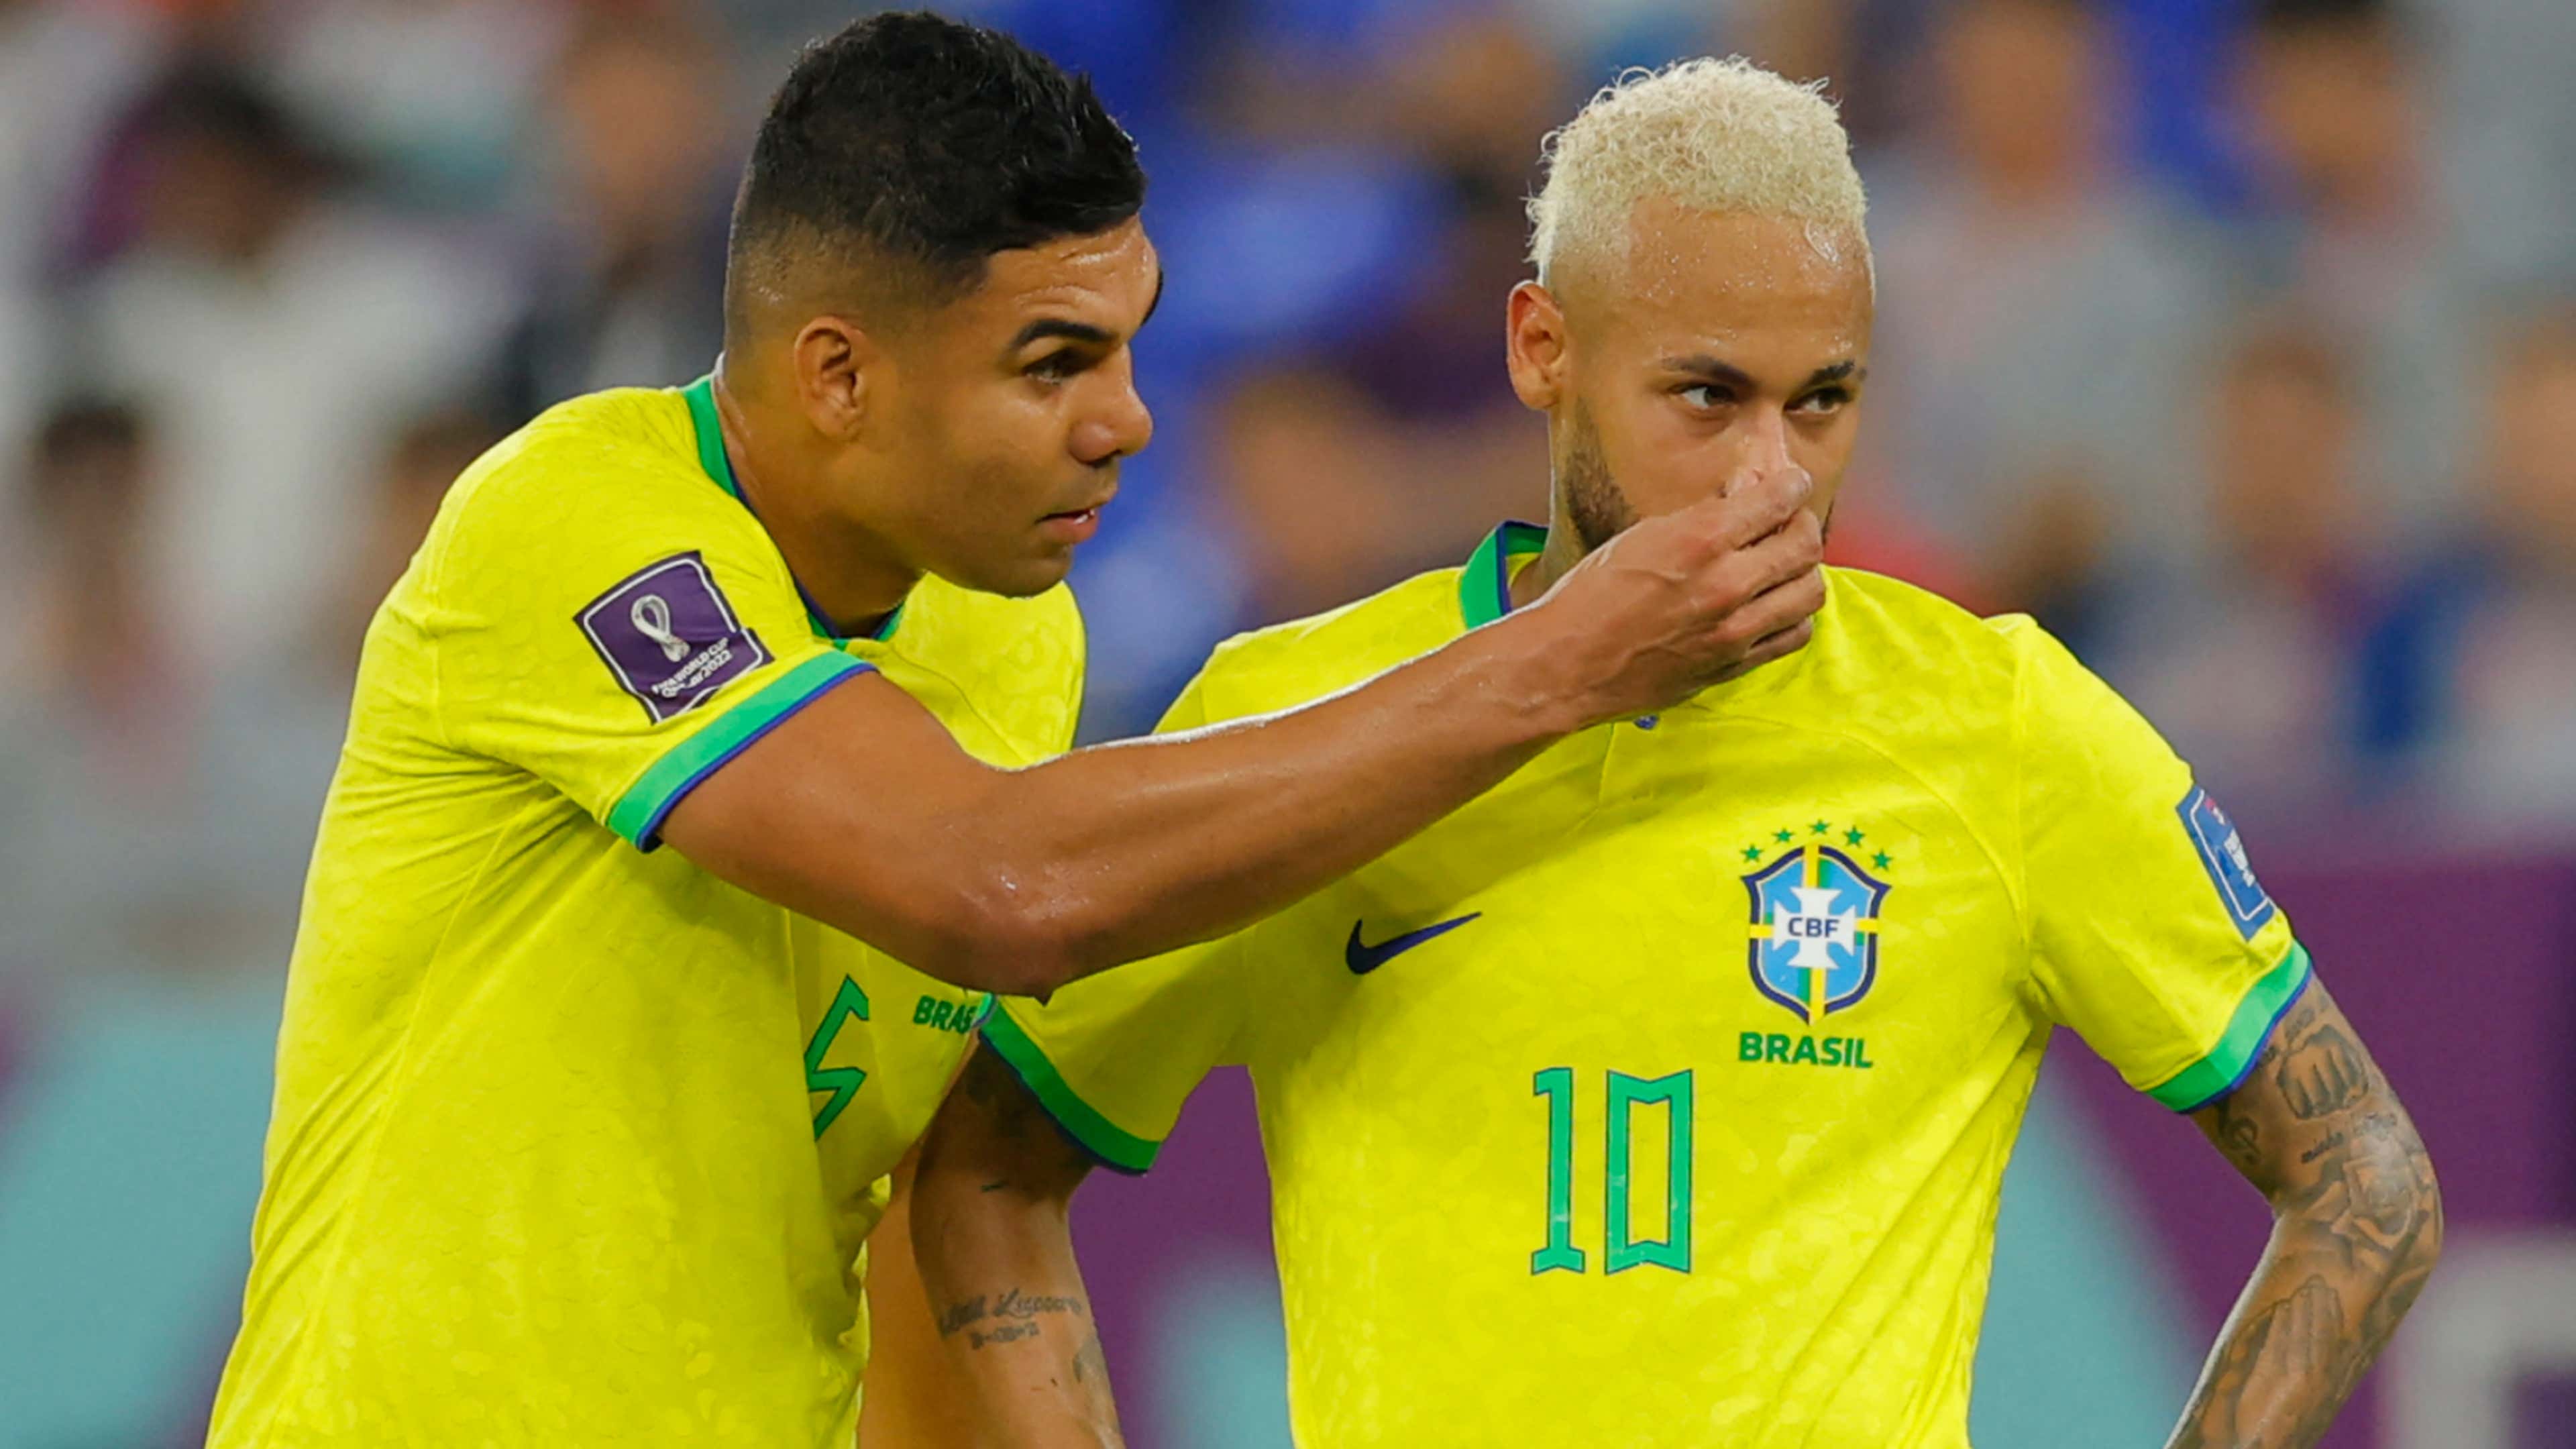 Camisa Brasil 20/21 Away Versão Jogador - Camisas de seleções - Nova Sports  - Loja de Roupas Esportivas